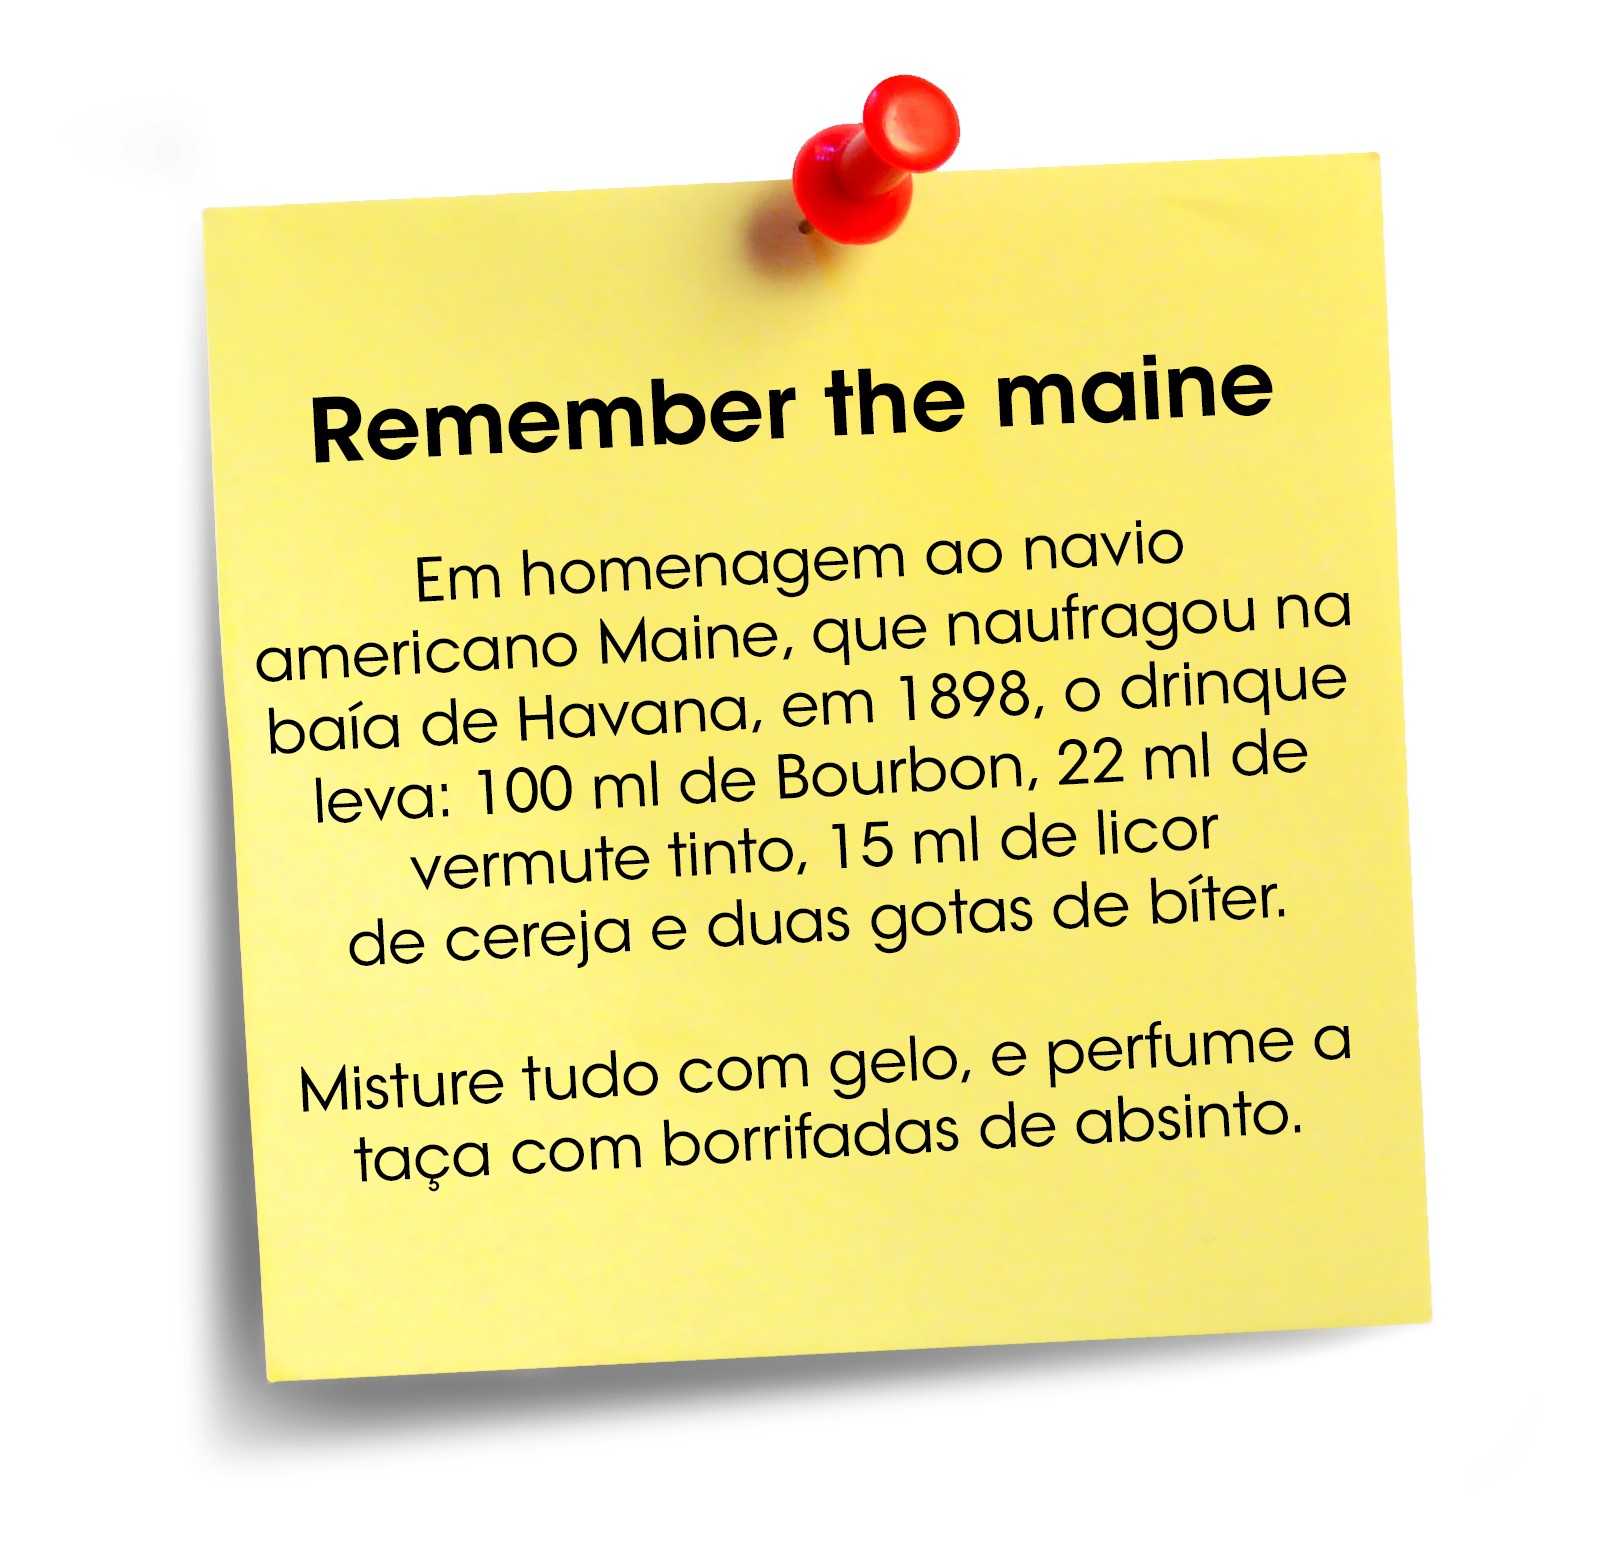 Remember the maine (Foto: Reprodução)